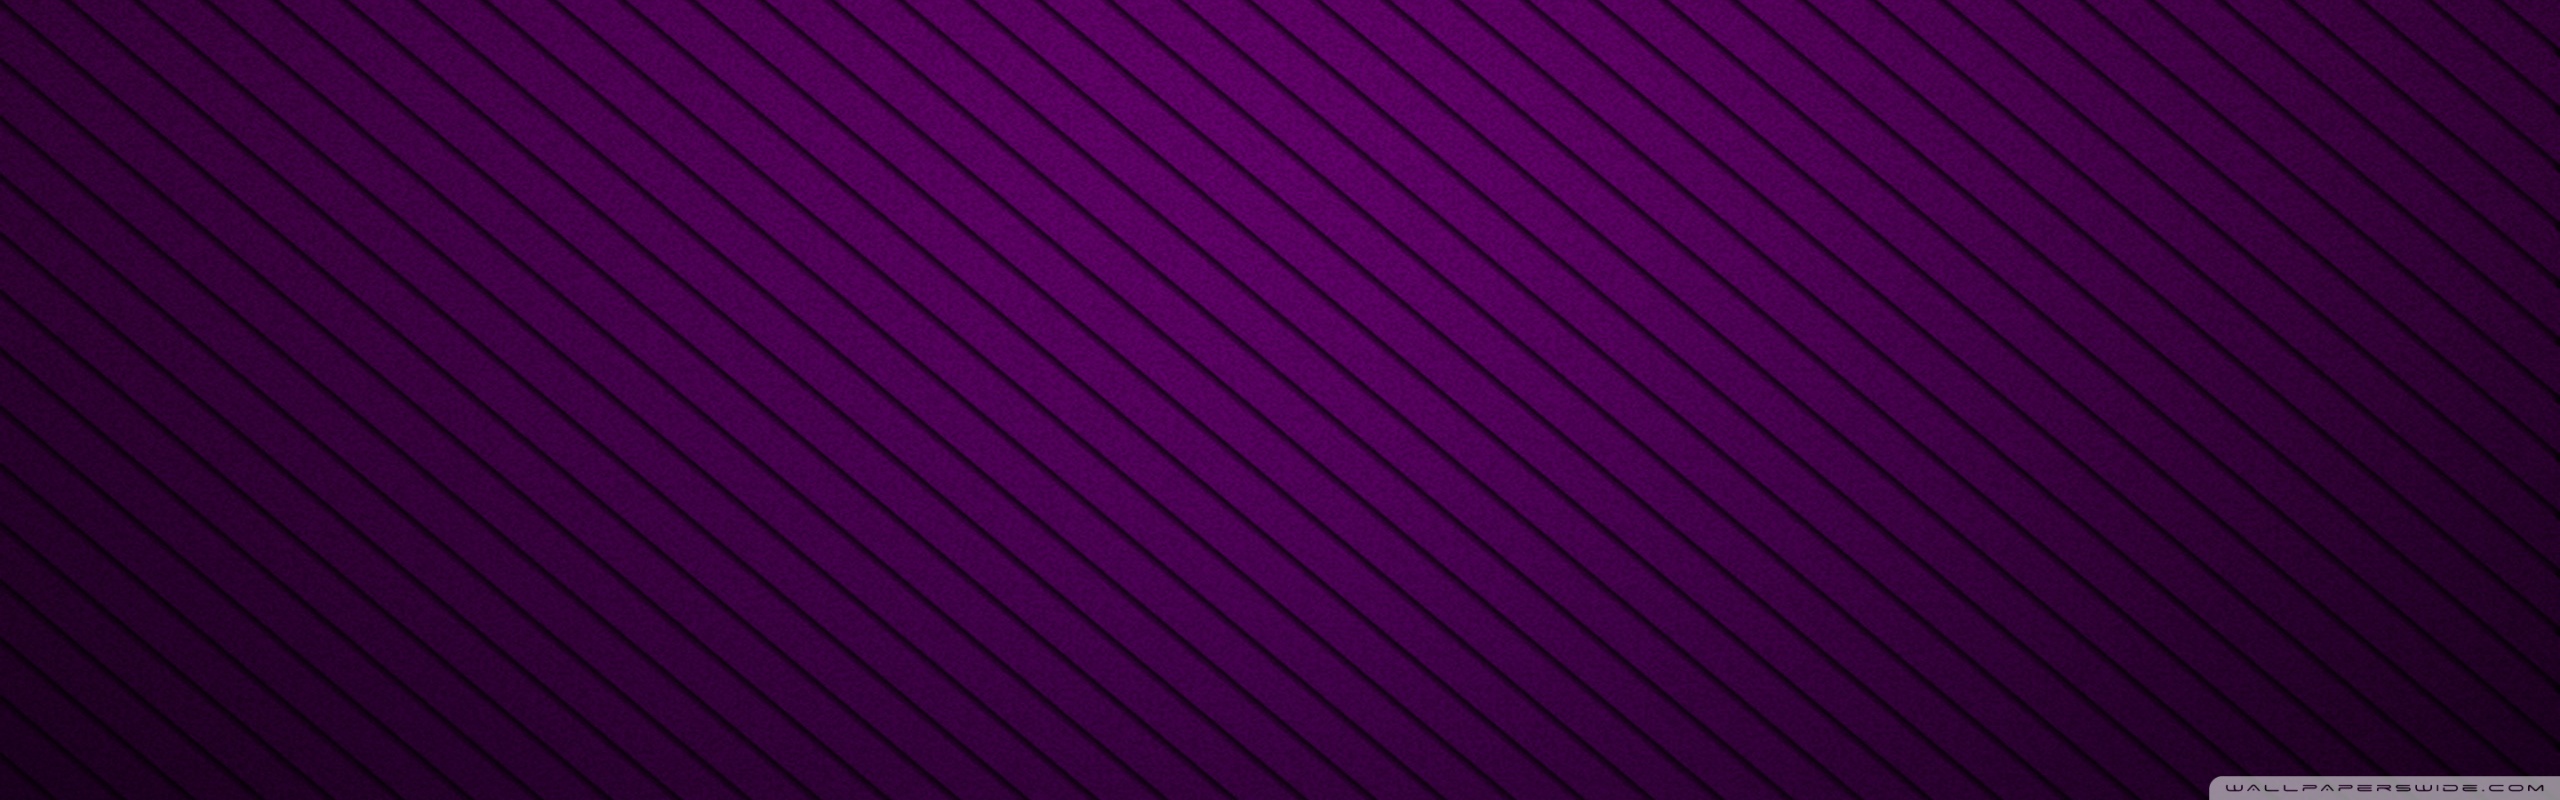 Purple lines